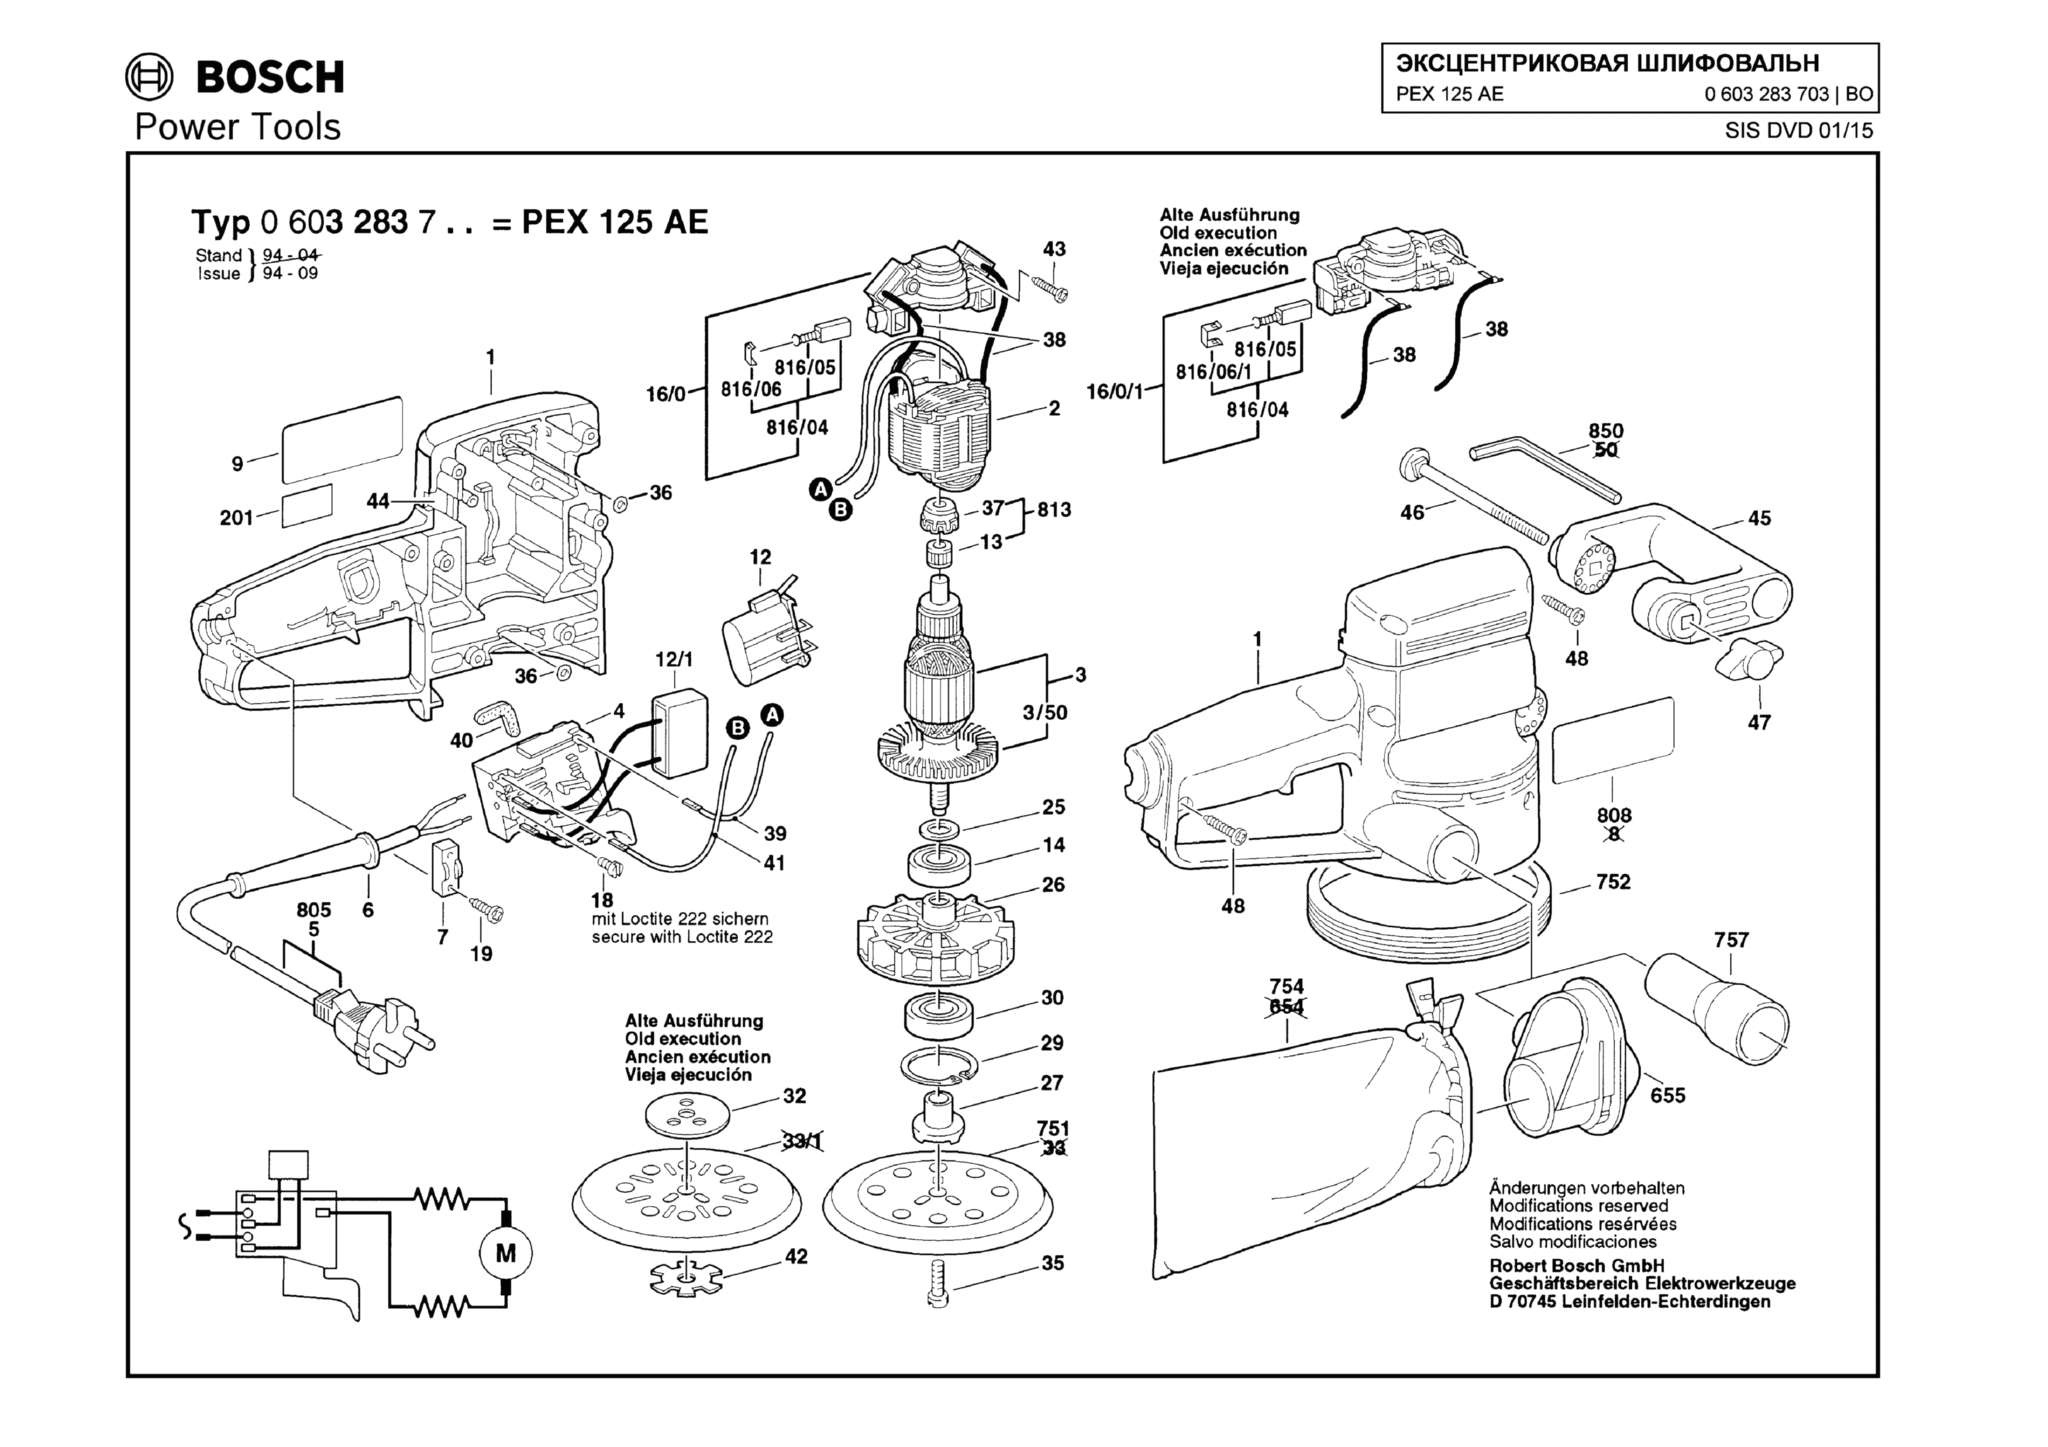 Запчасти, схема и деталировка Bosch PEX 125 AE (ТИП 0603283703)